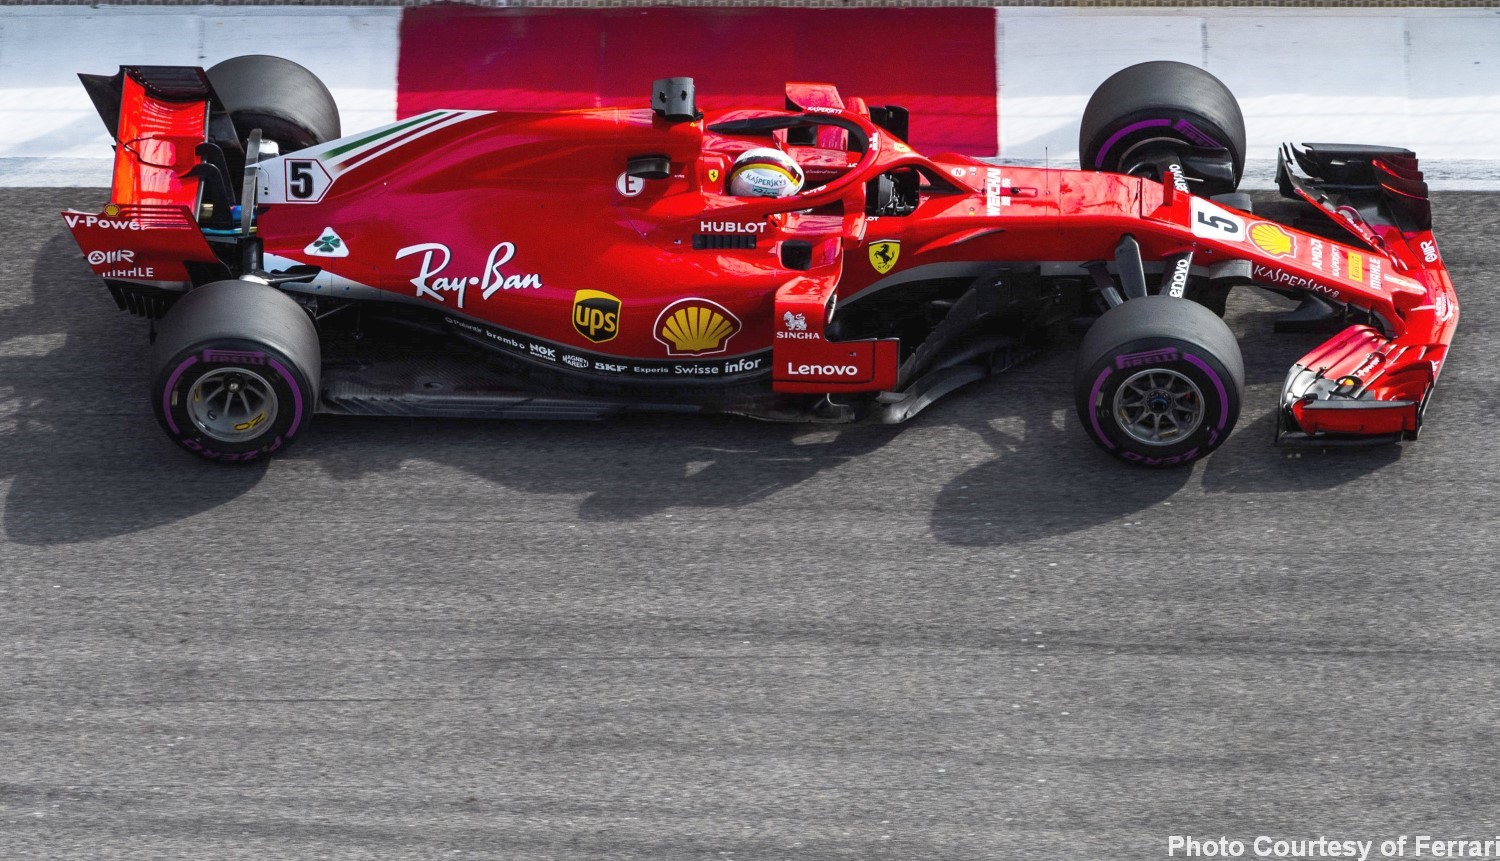 The Ferrari is no match for the Aldo Costa designed Mercedes